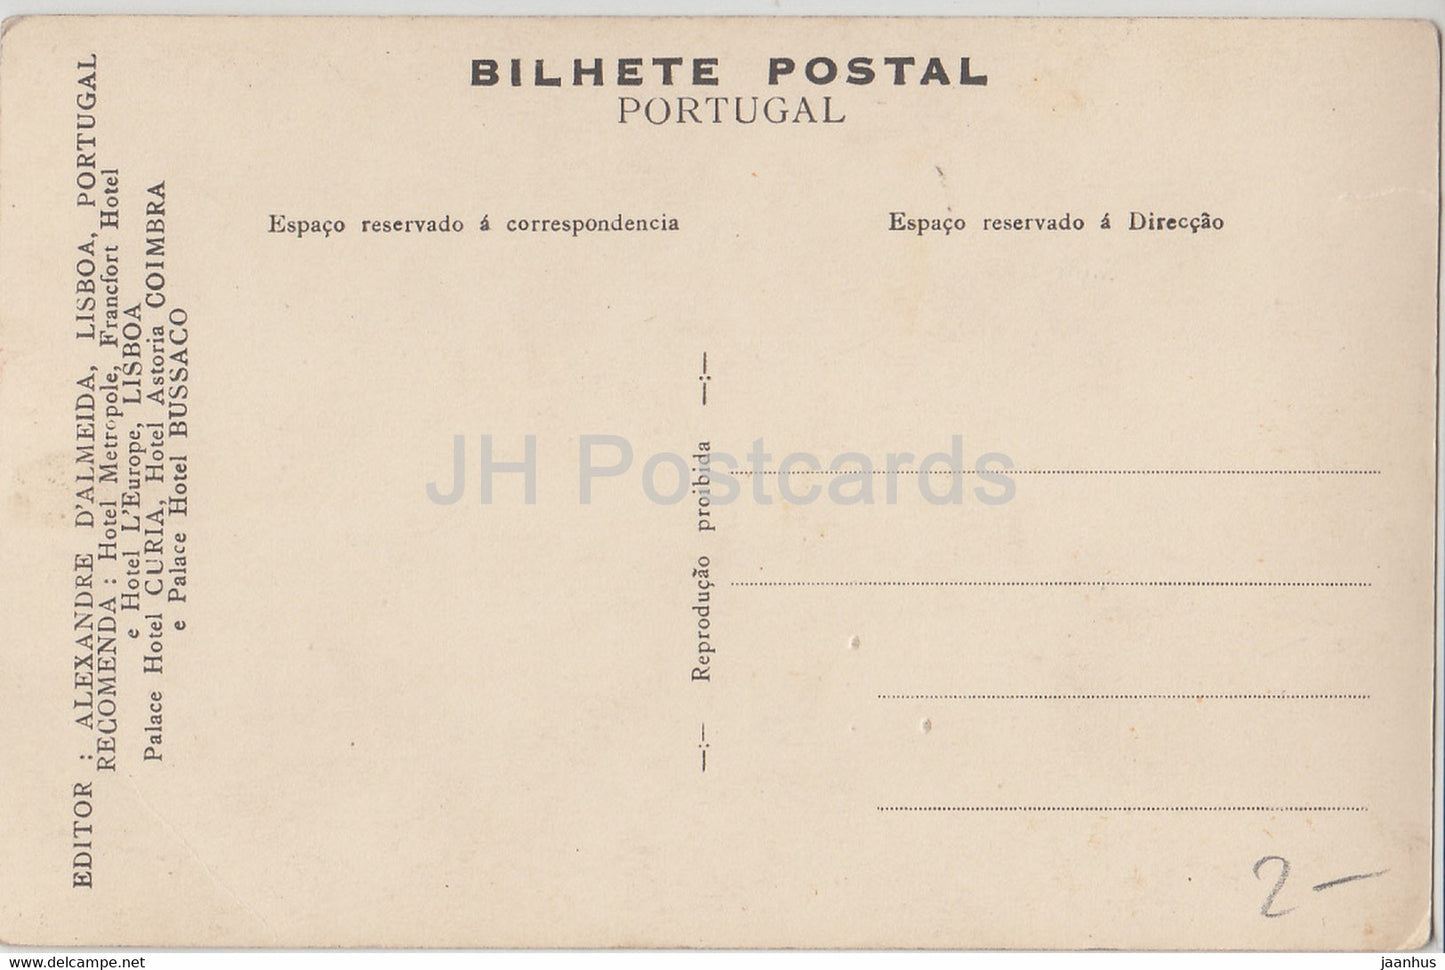 Bussaco - Uma Galeria do Palace Hotel - 32 - alte Postkarte - Portugal - unbenutzt